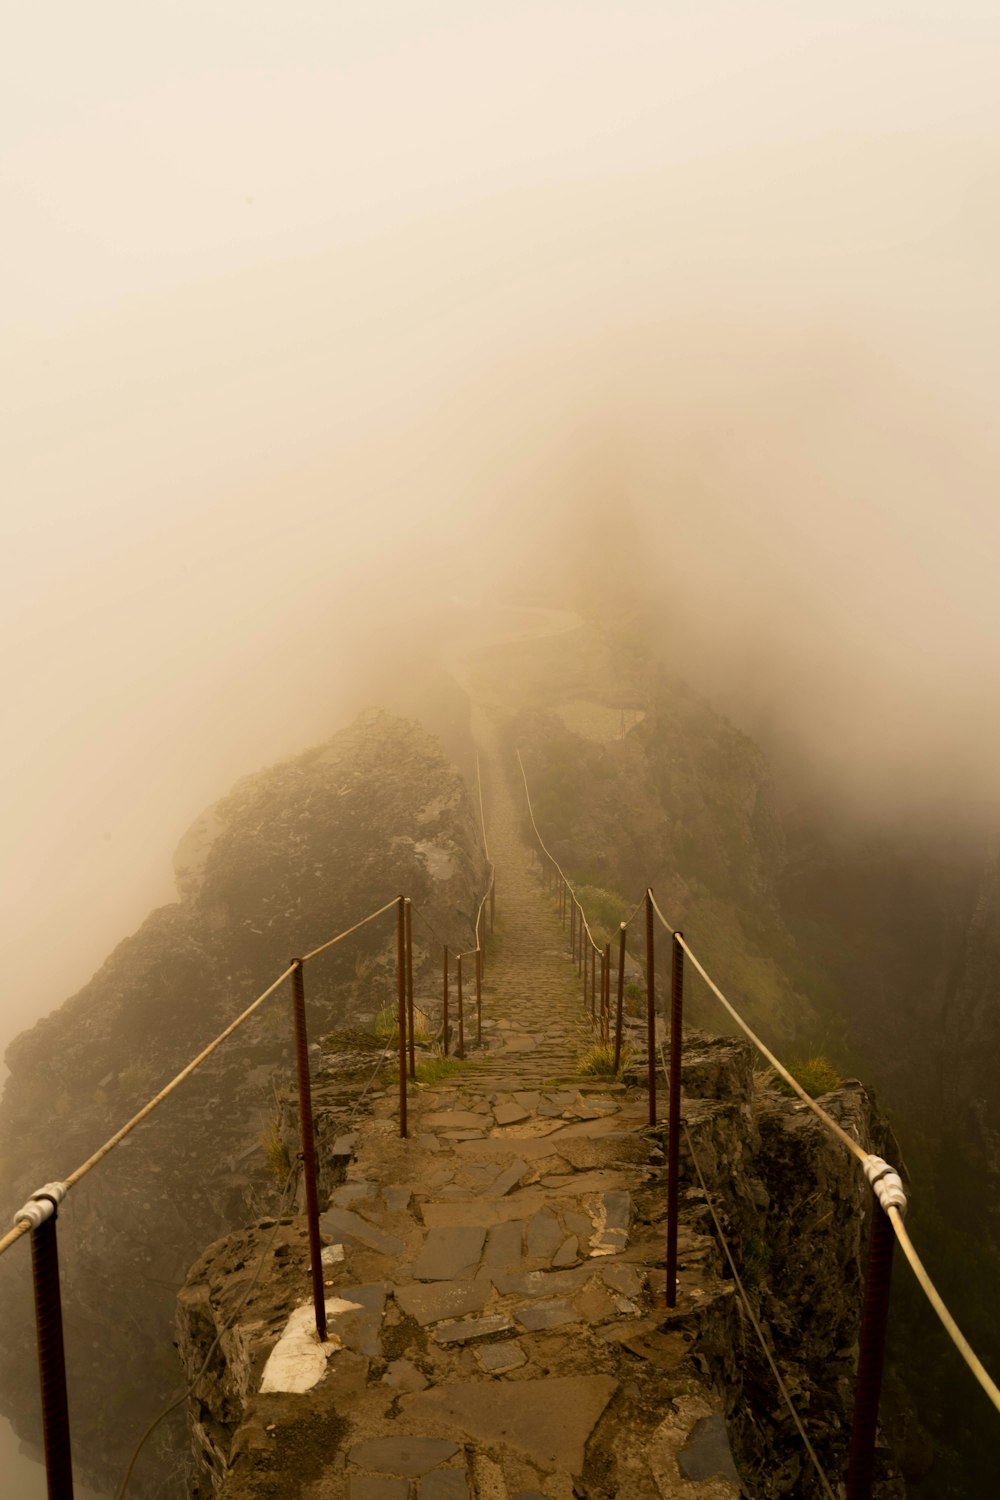 Foto in scala di grigi del ponte sulla montagna